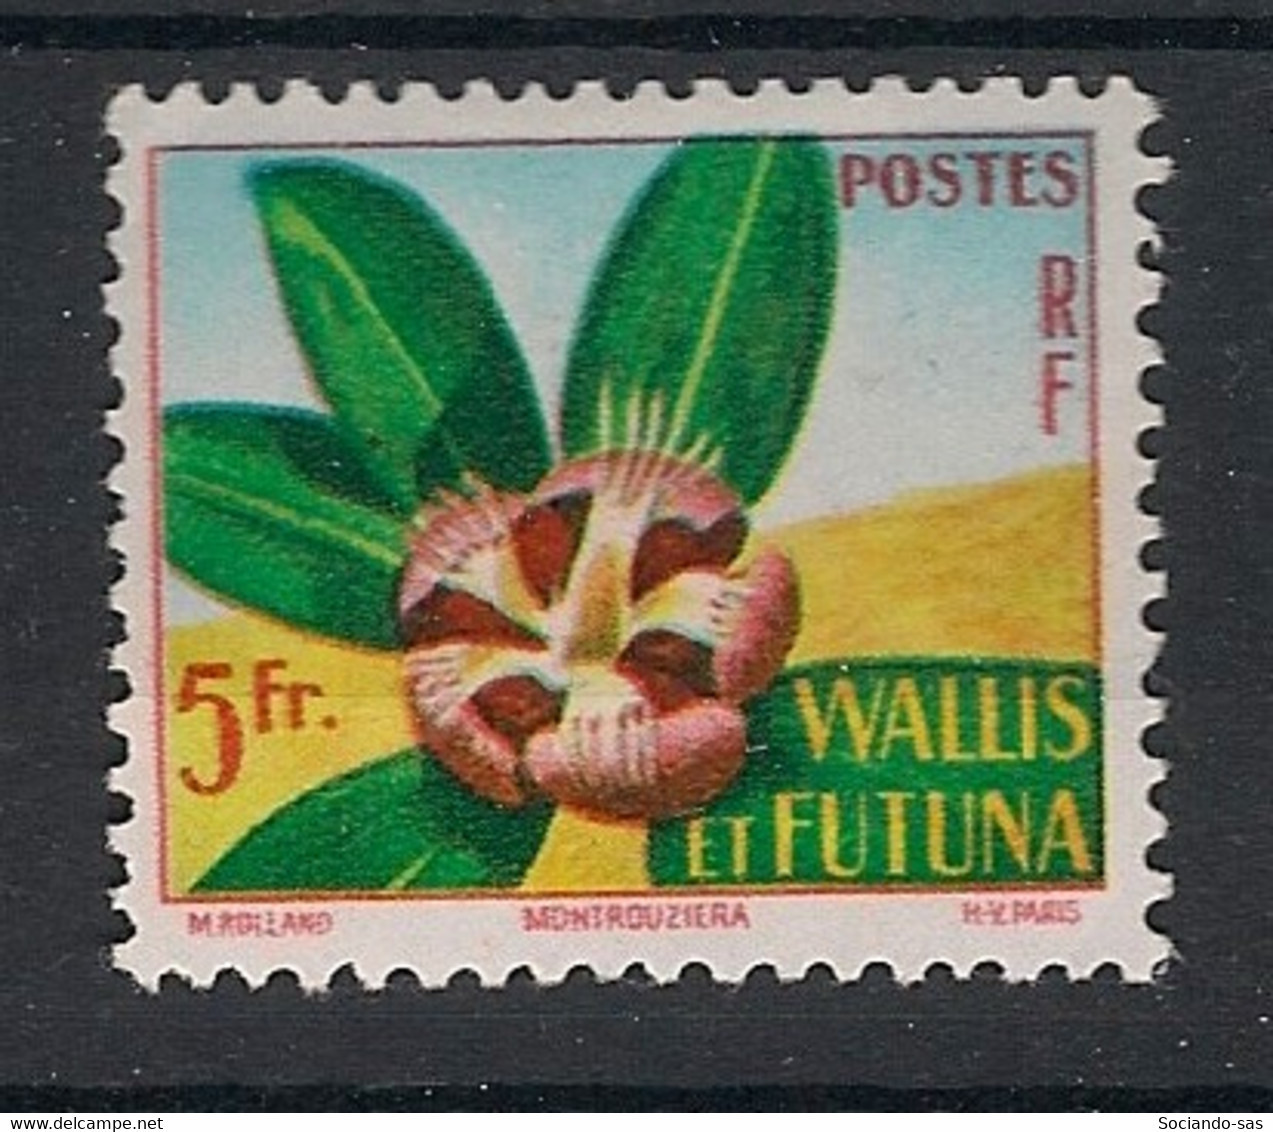 WALLIS ET FUTUNA - 1958 - N°Yv. 159 - Fleur - Neuf Luxe ** / MNH / Postfrisch - Nuovi